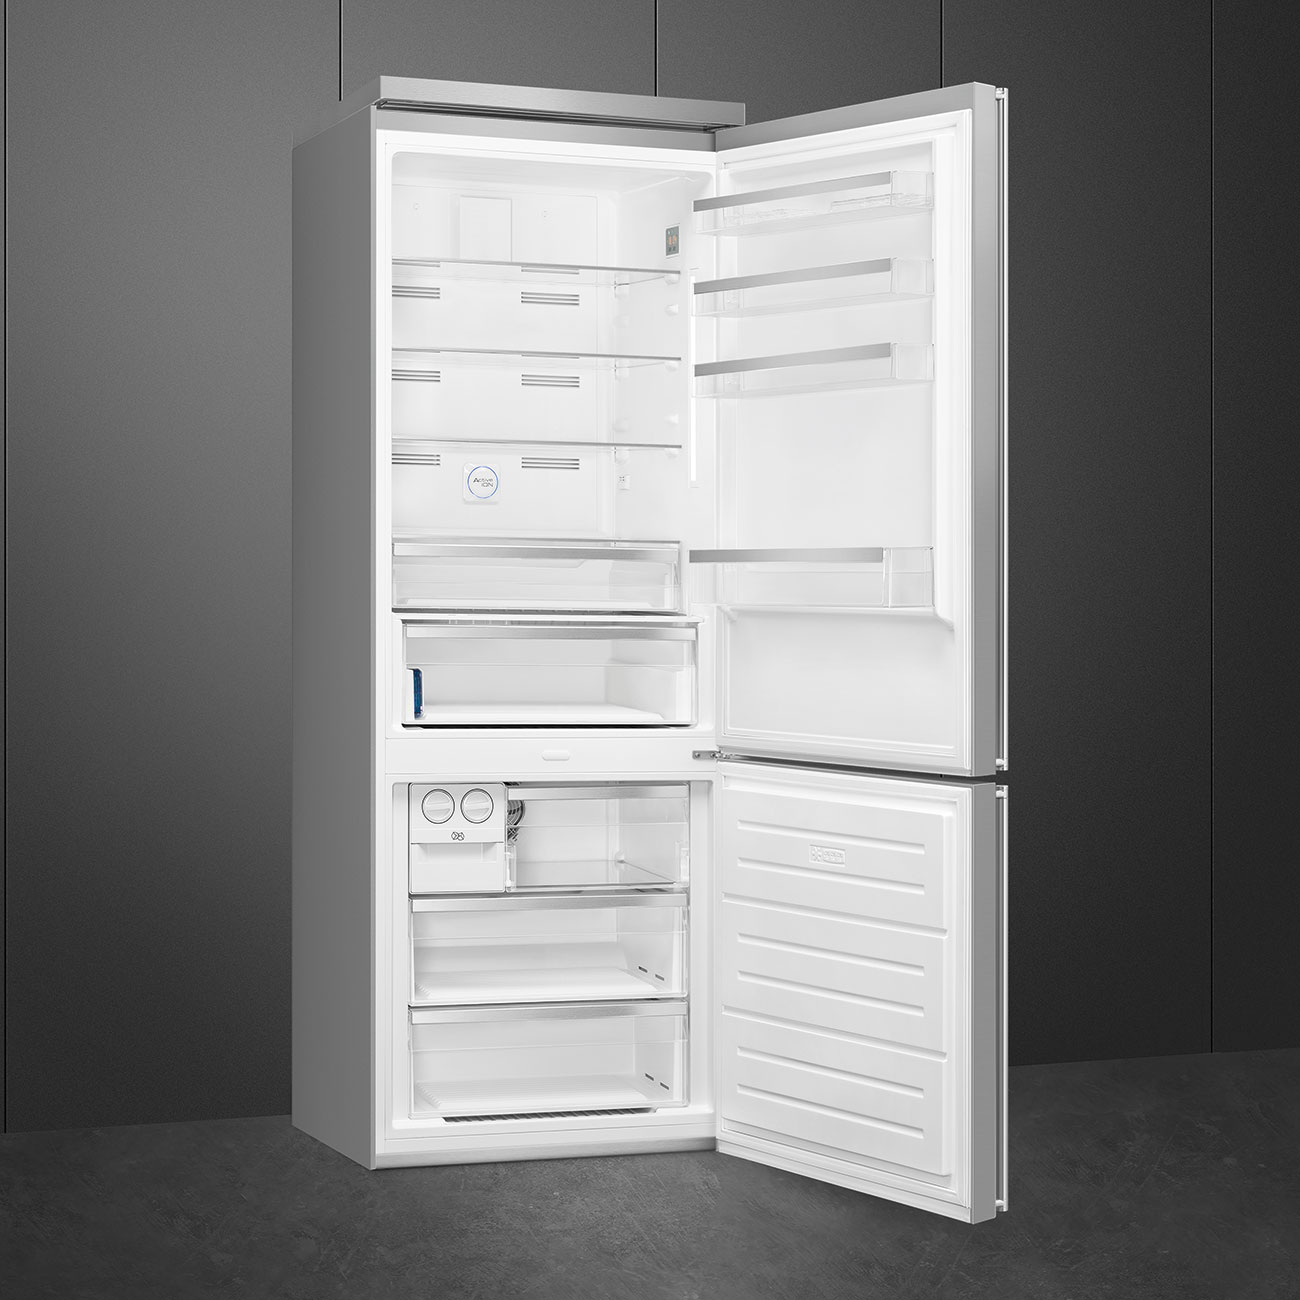 Koel-vriescombinatie Vrijstaand koelkast - Smeg_5